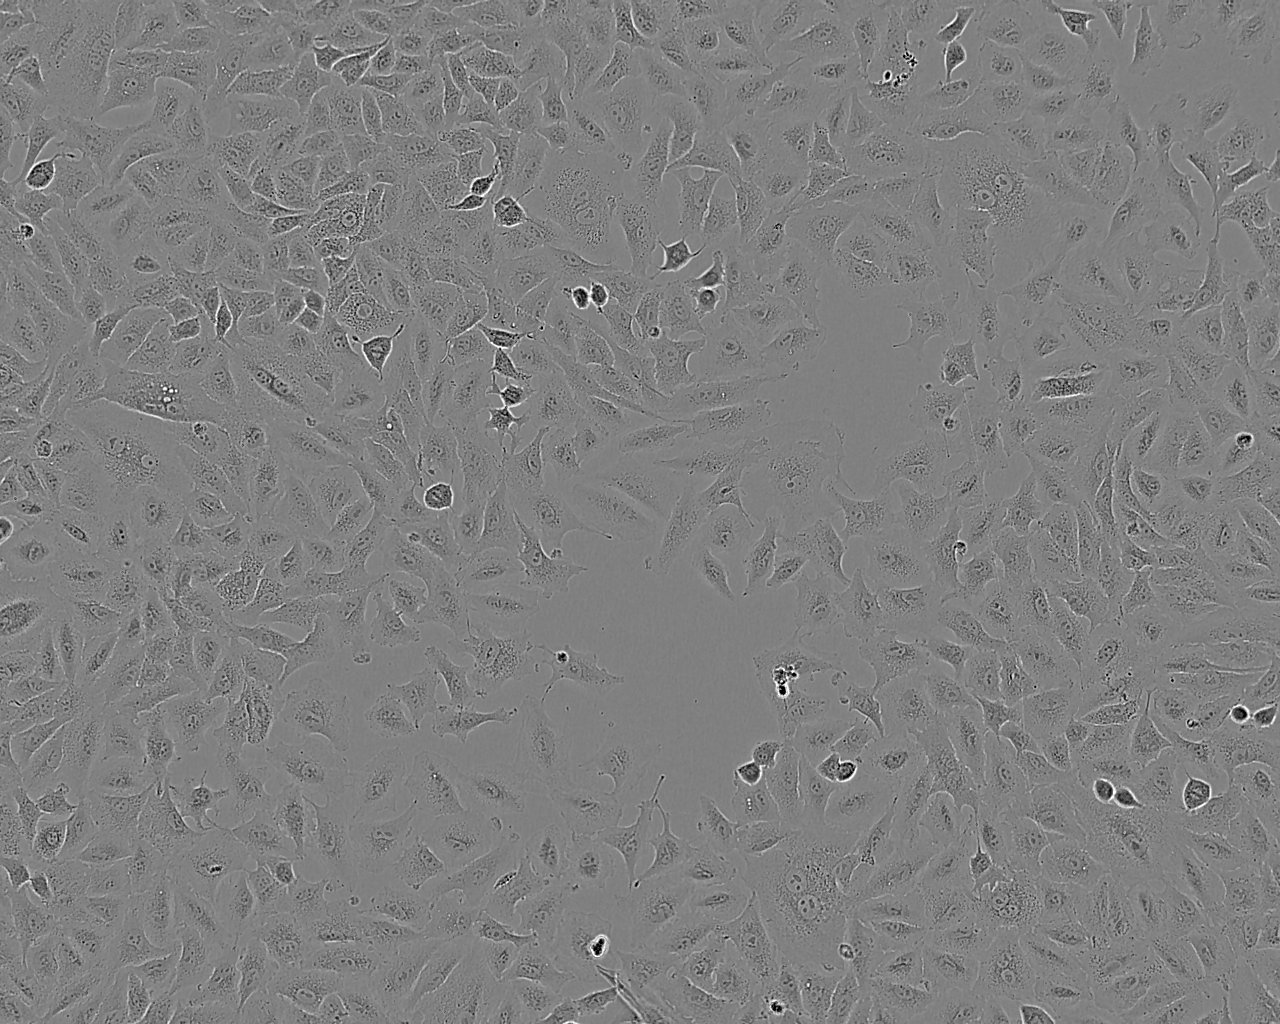 SK-N-DZ Cells|人成神经骨髓瘤细胞系